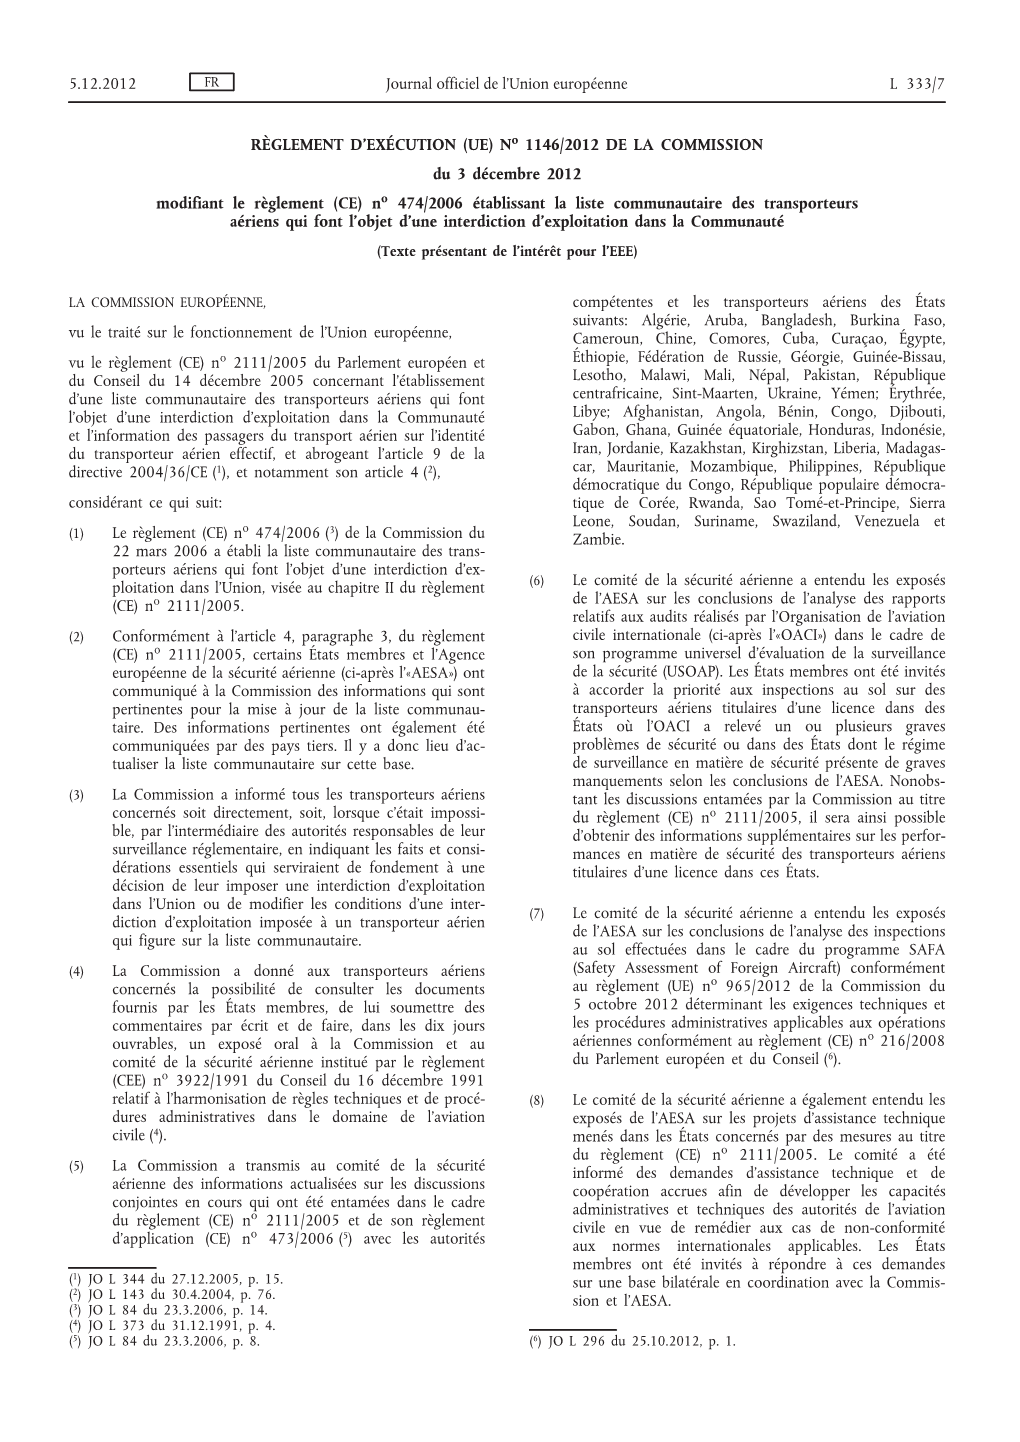 (UE) No 1146/2012 De La Commission Du 3 Décembre 2012 Modifiant Le Règlement